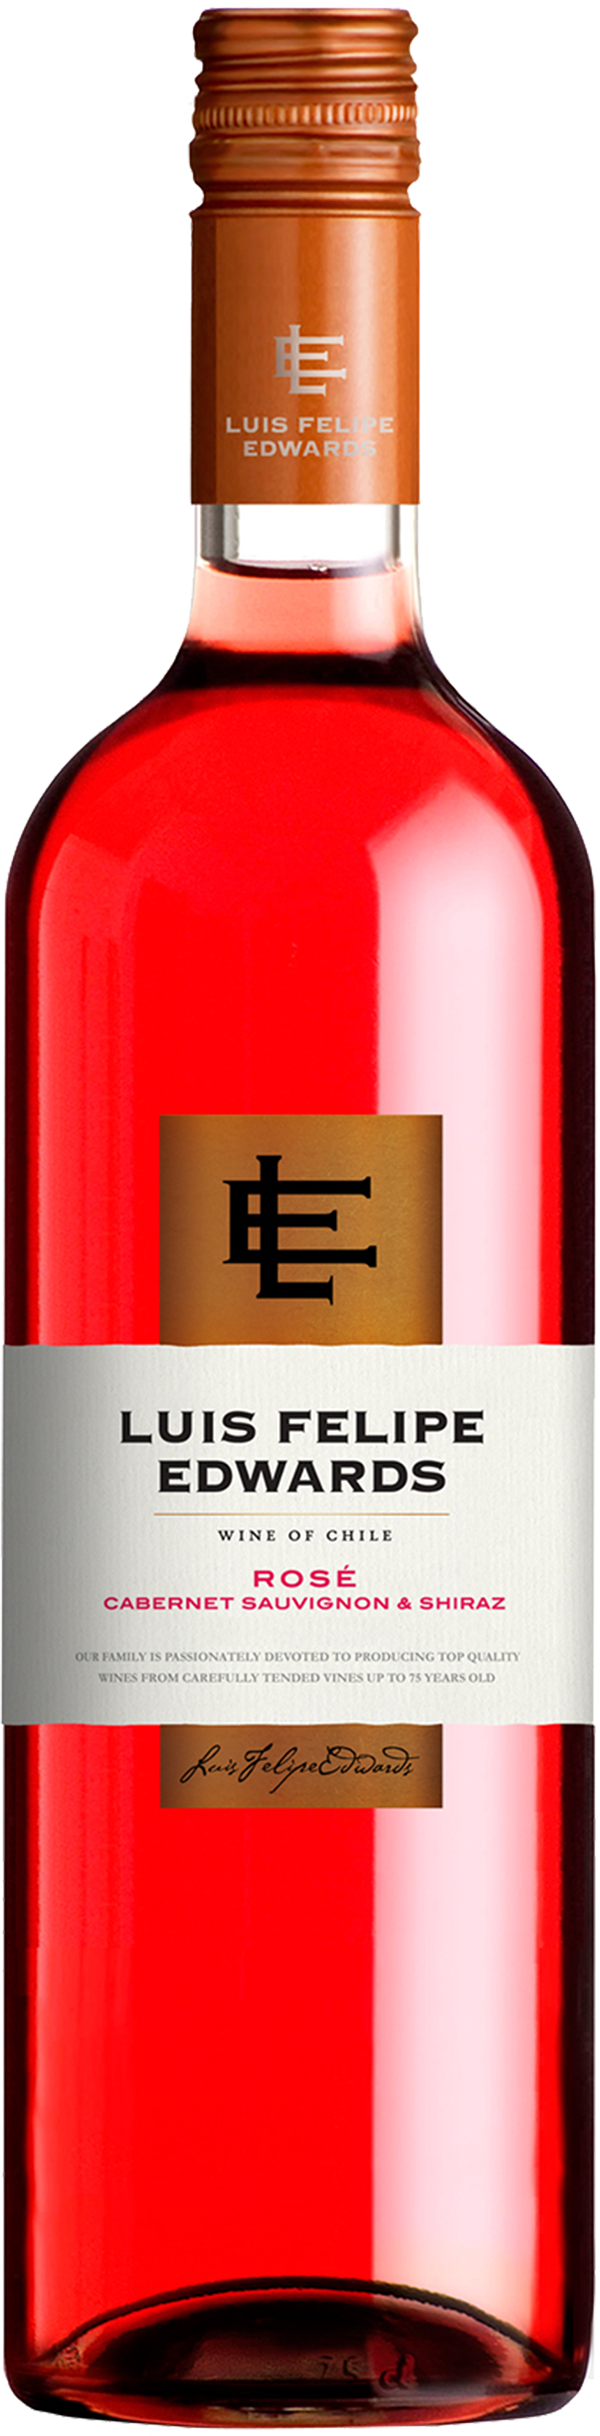 Вино Луис Фелипе Эдвардс Пьюпилла. Luis Felipe Edwards Shiraz вино. Вино Пьюпилла Шираз. Луис Фелипе Эдвардс Каберне Совиньон.